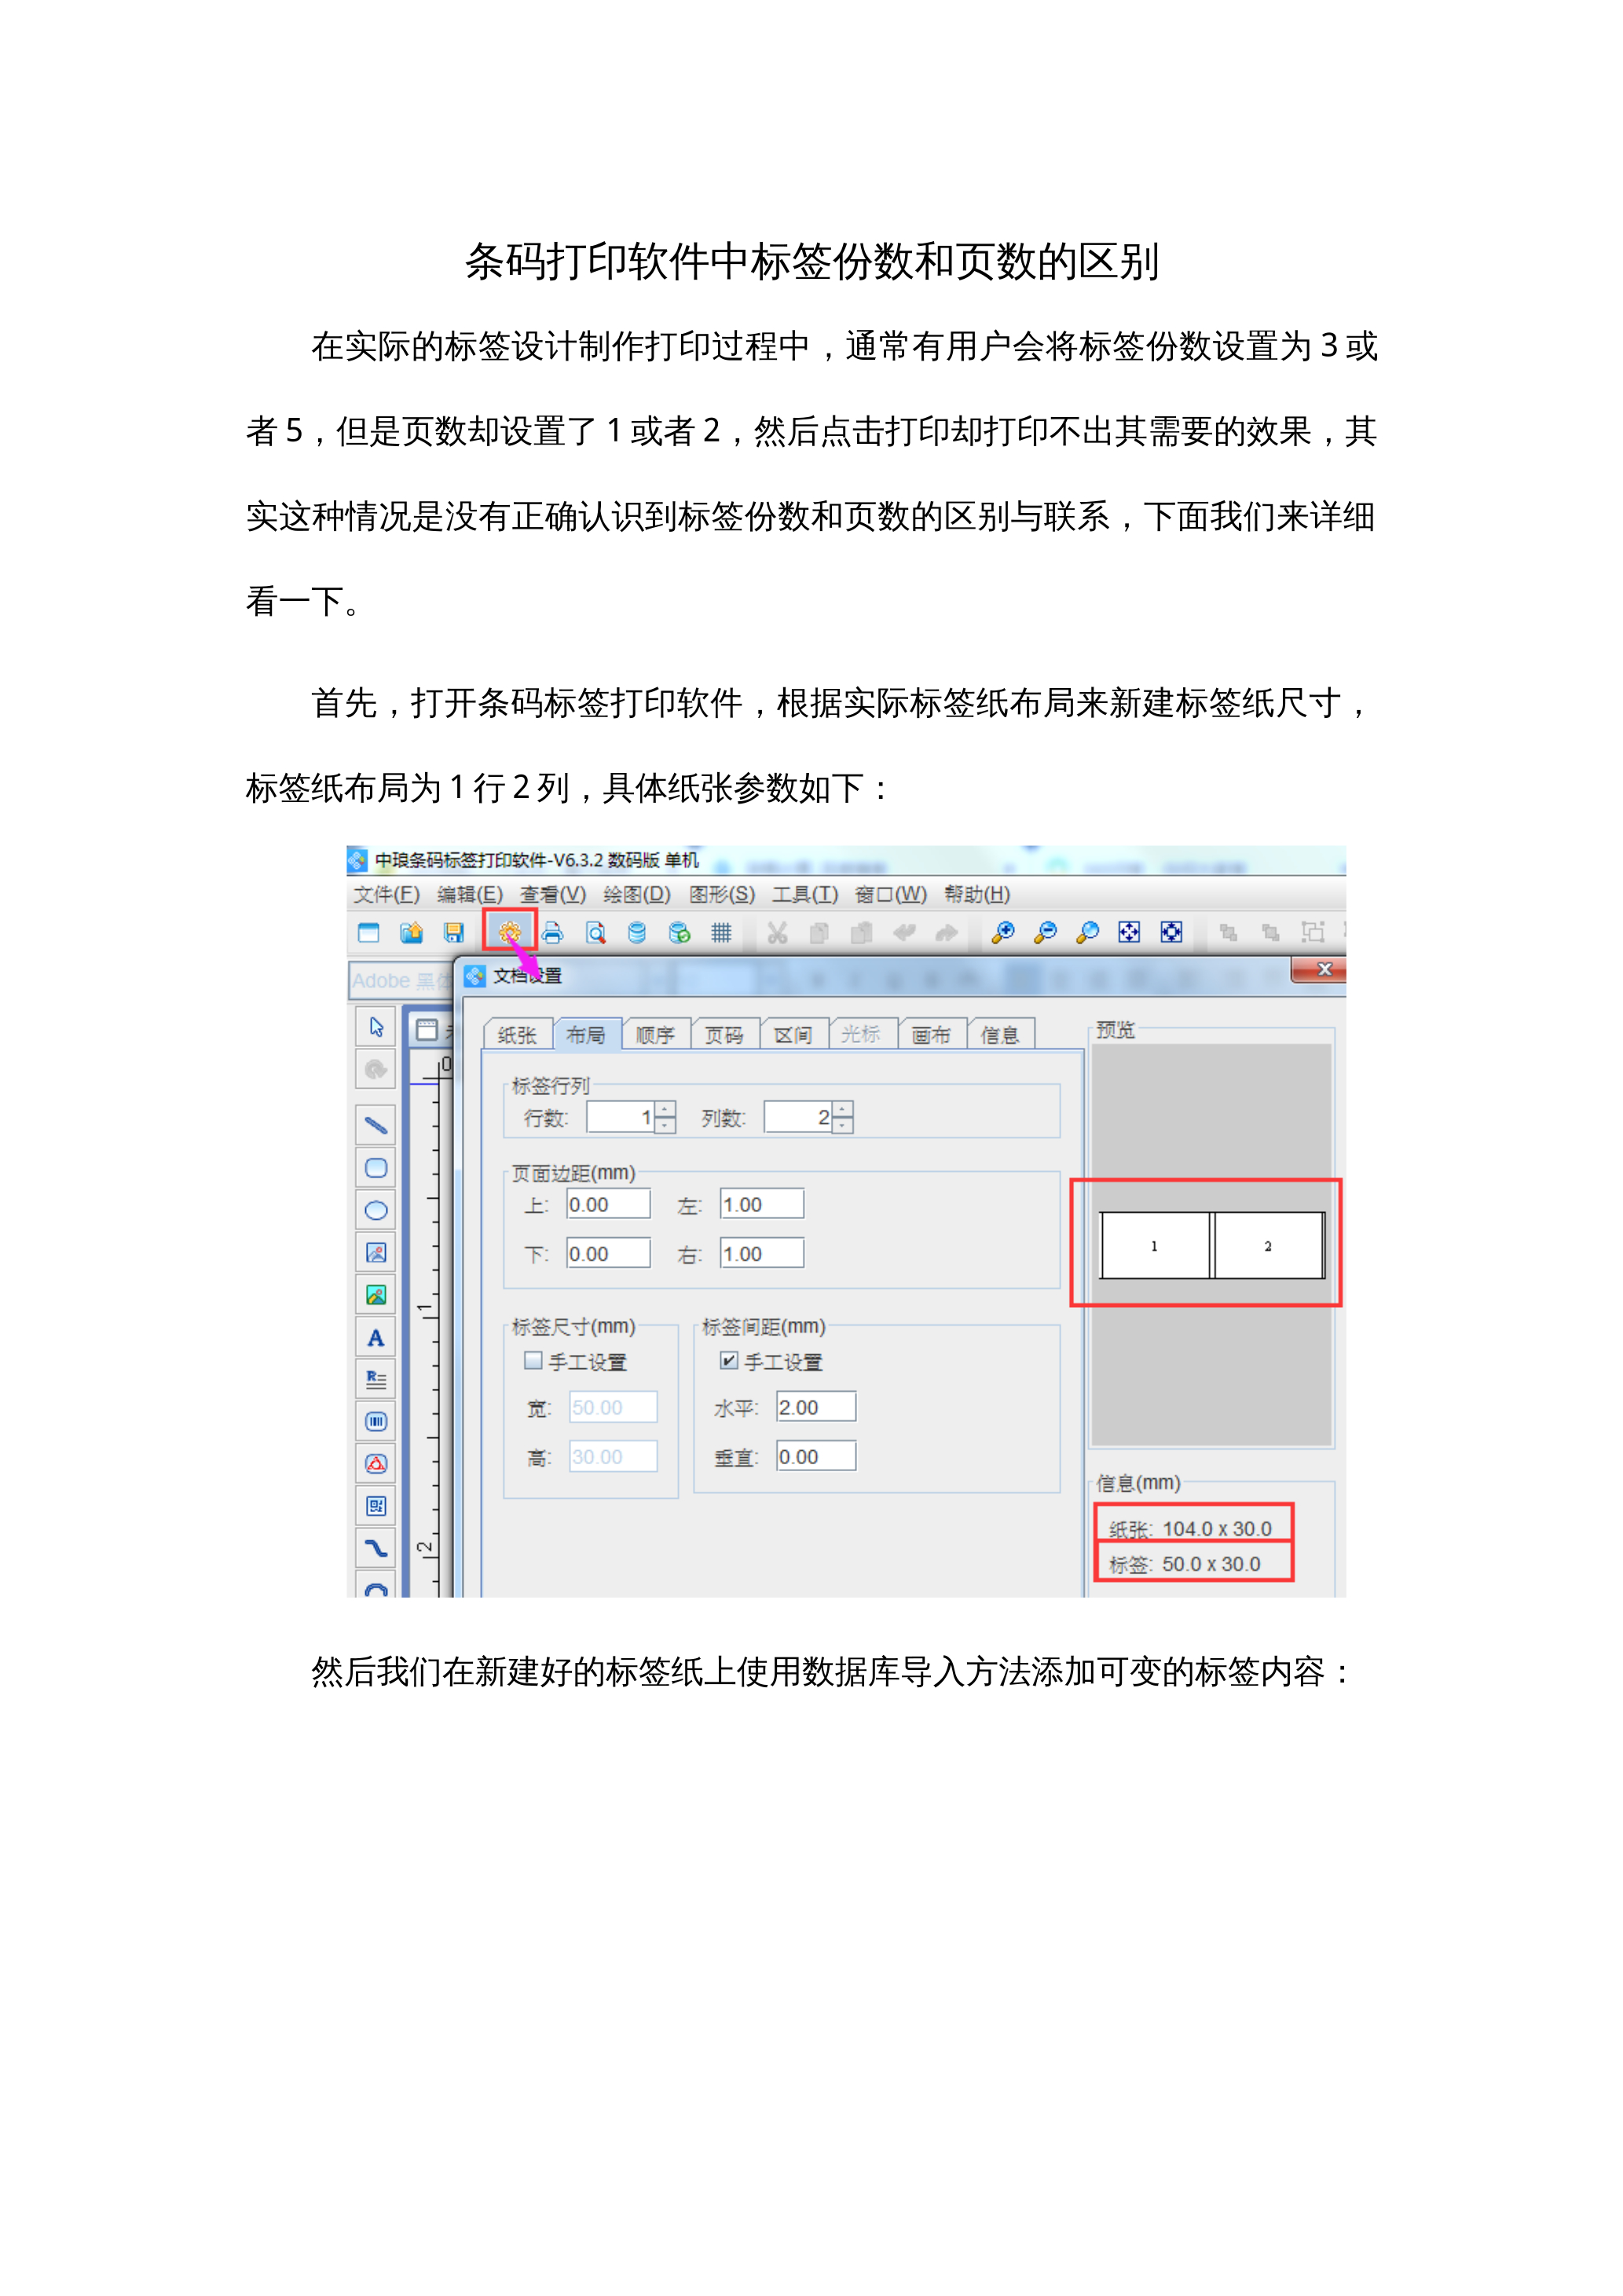 条码打印软件中标签份数和页数的区别 封面